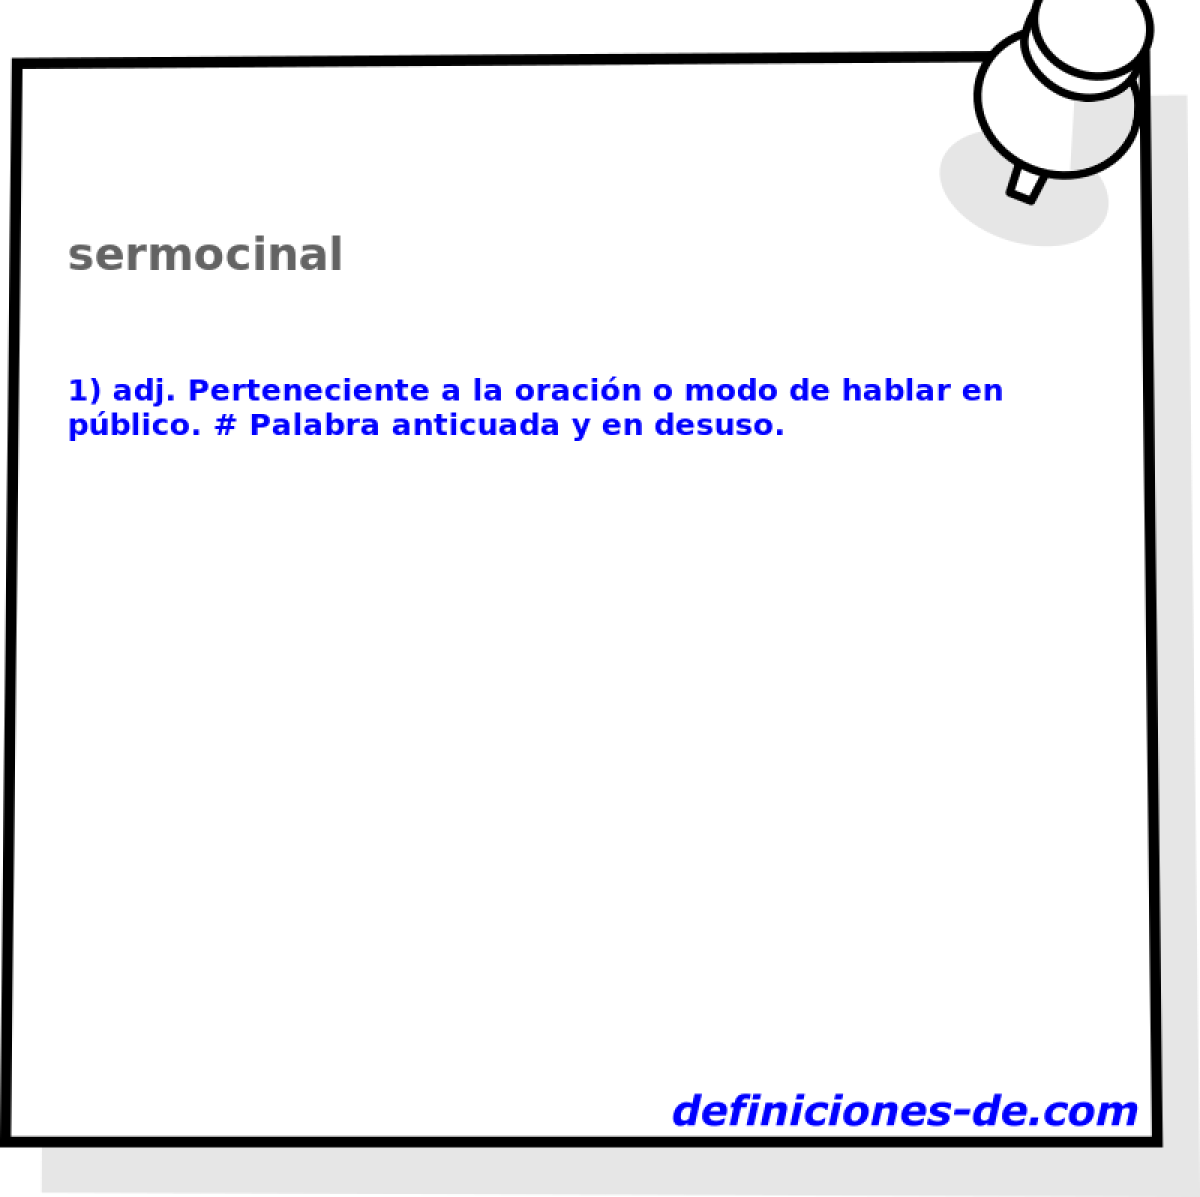 sermocinal 